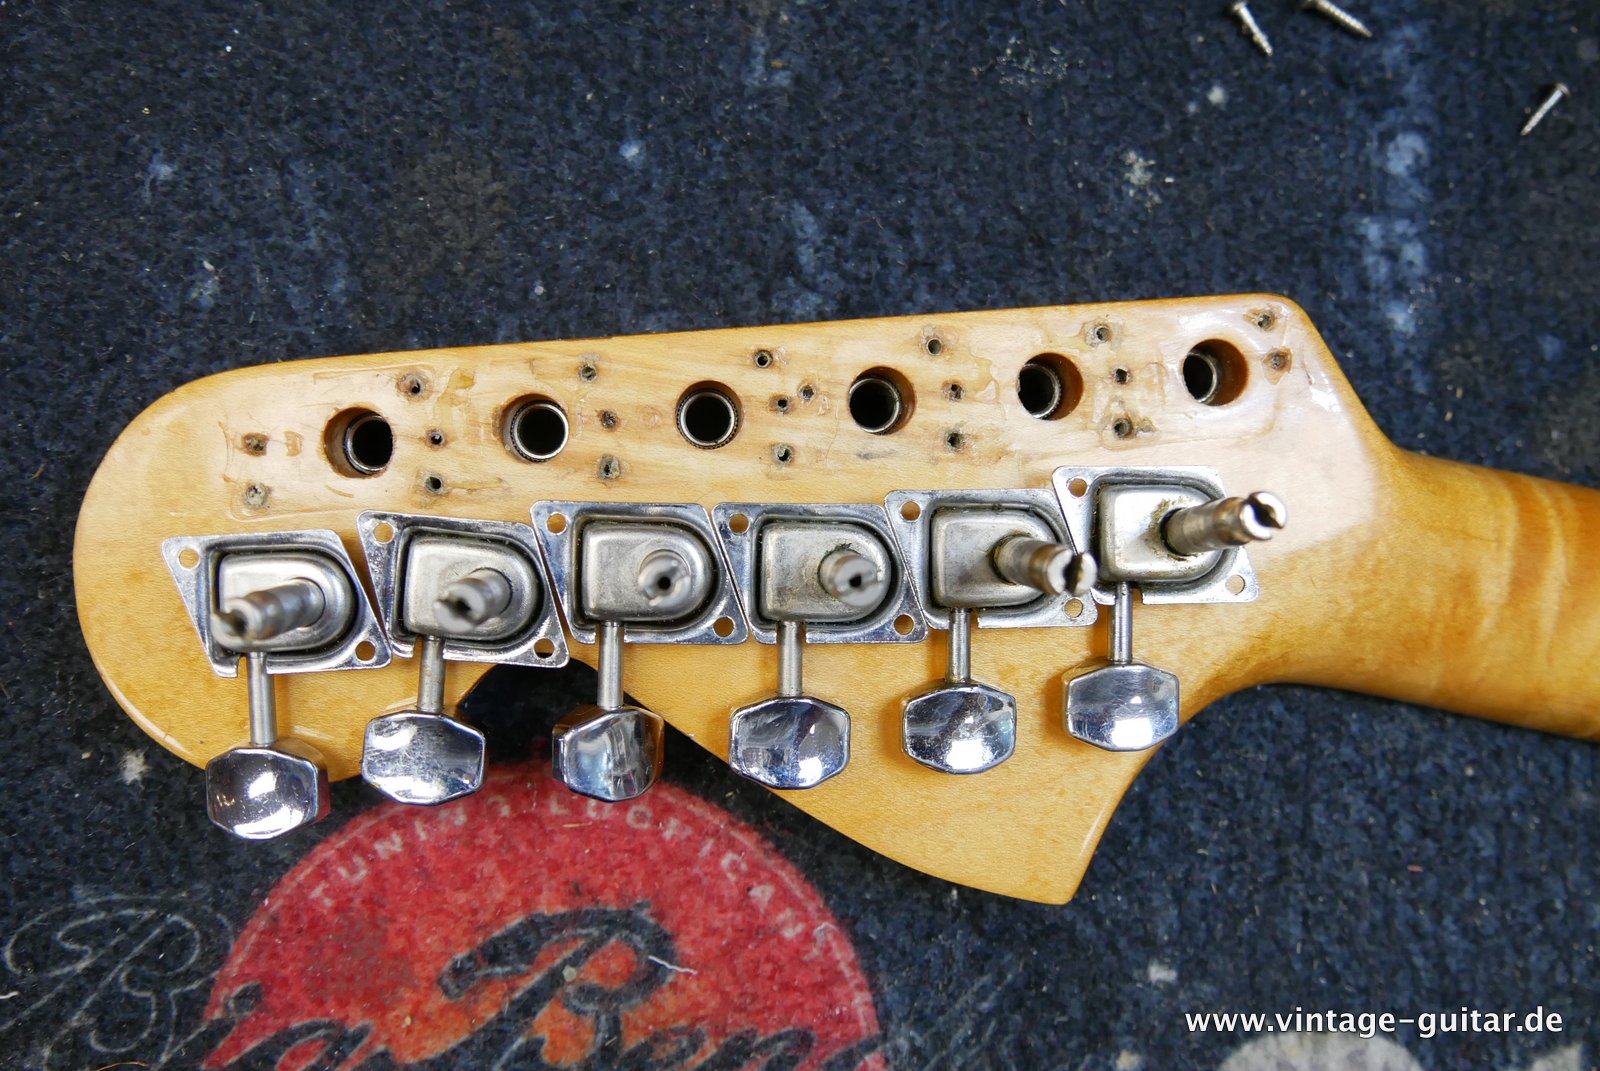 Fender-Stratocaster-1972-sunburst-4-hole-017.JPG